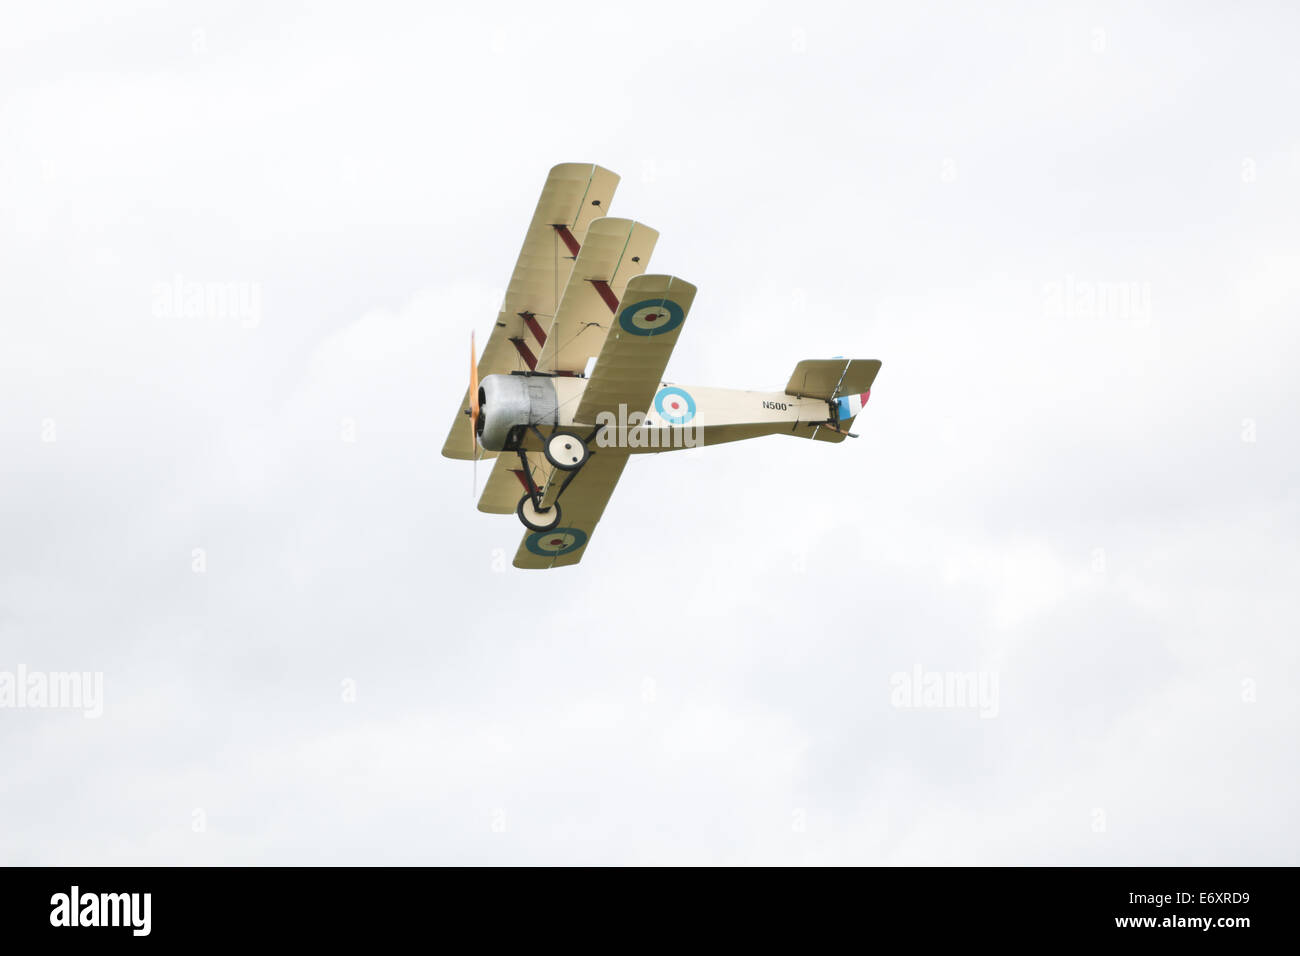 C'est la Grande Guerre Display Team - Sopwith Triplane affiché à Shoreham Airshow, 2014, l'aéroport de Shoreham, East Sussex, UK. Banque D'Images